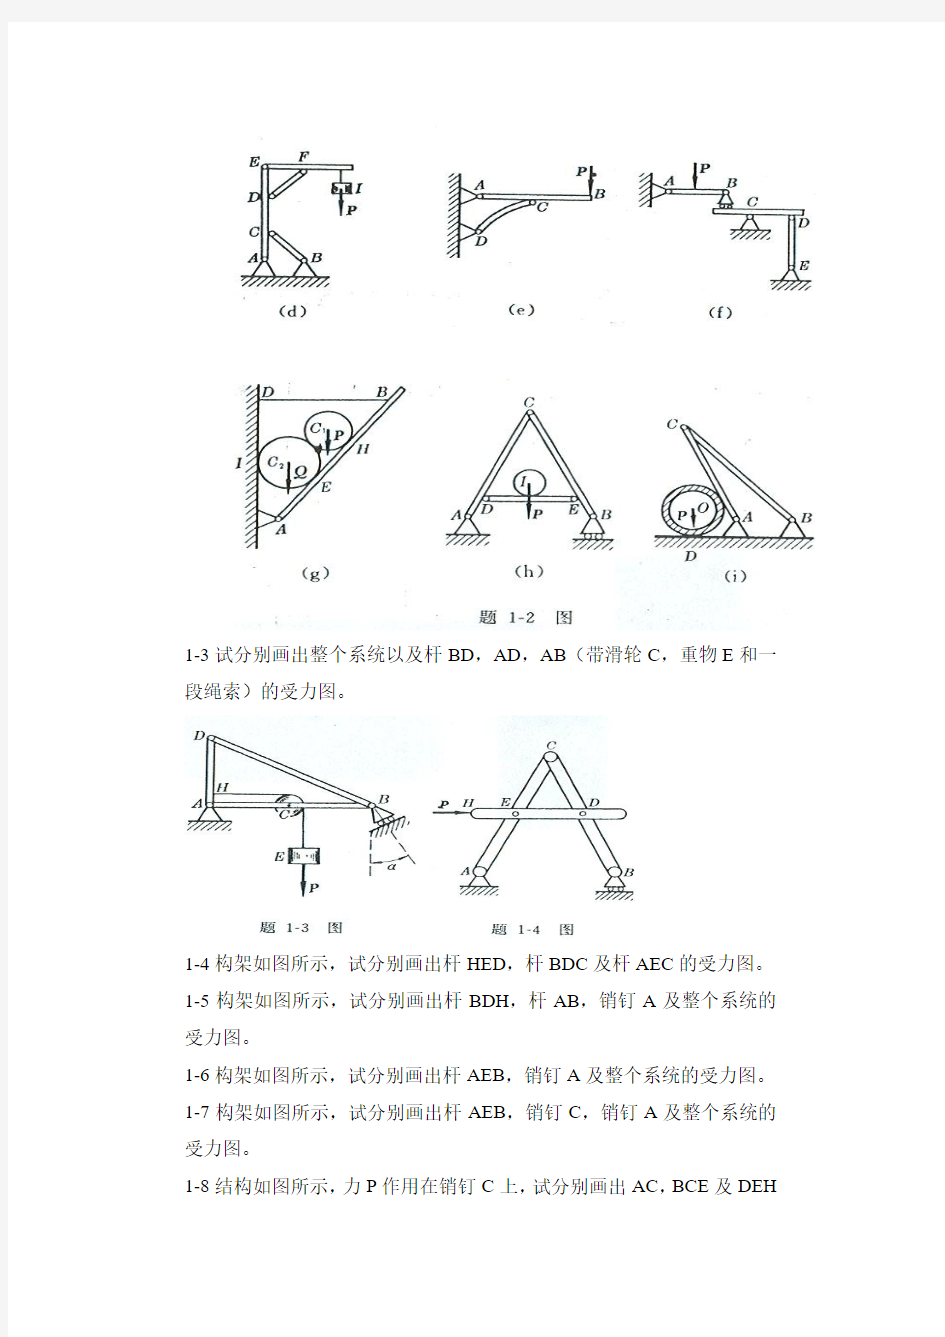 工程力学--静力学(北京科大、东北大学版)习题全解